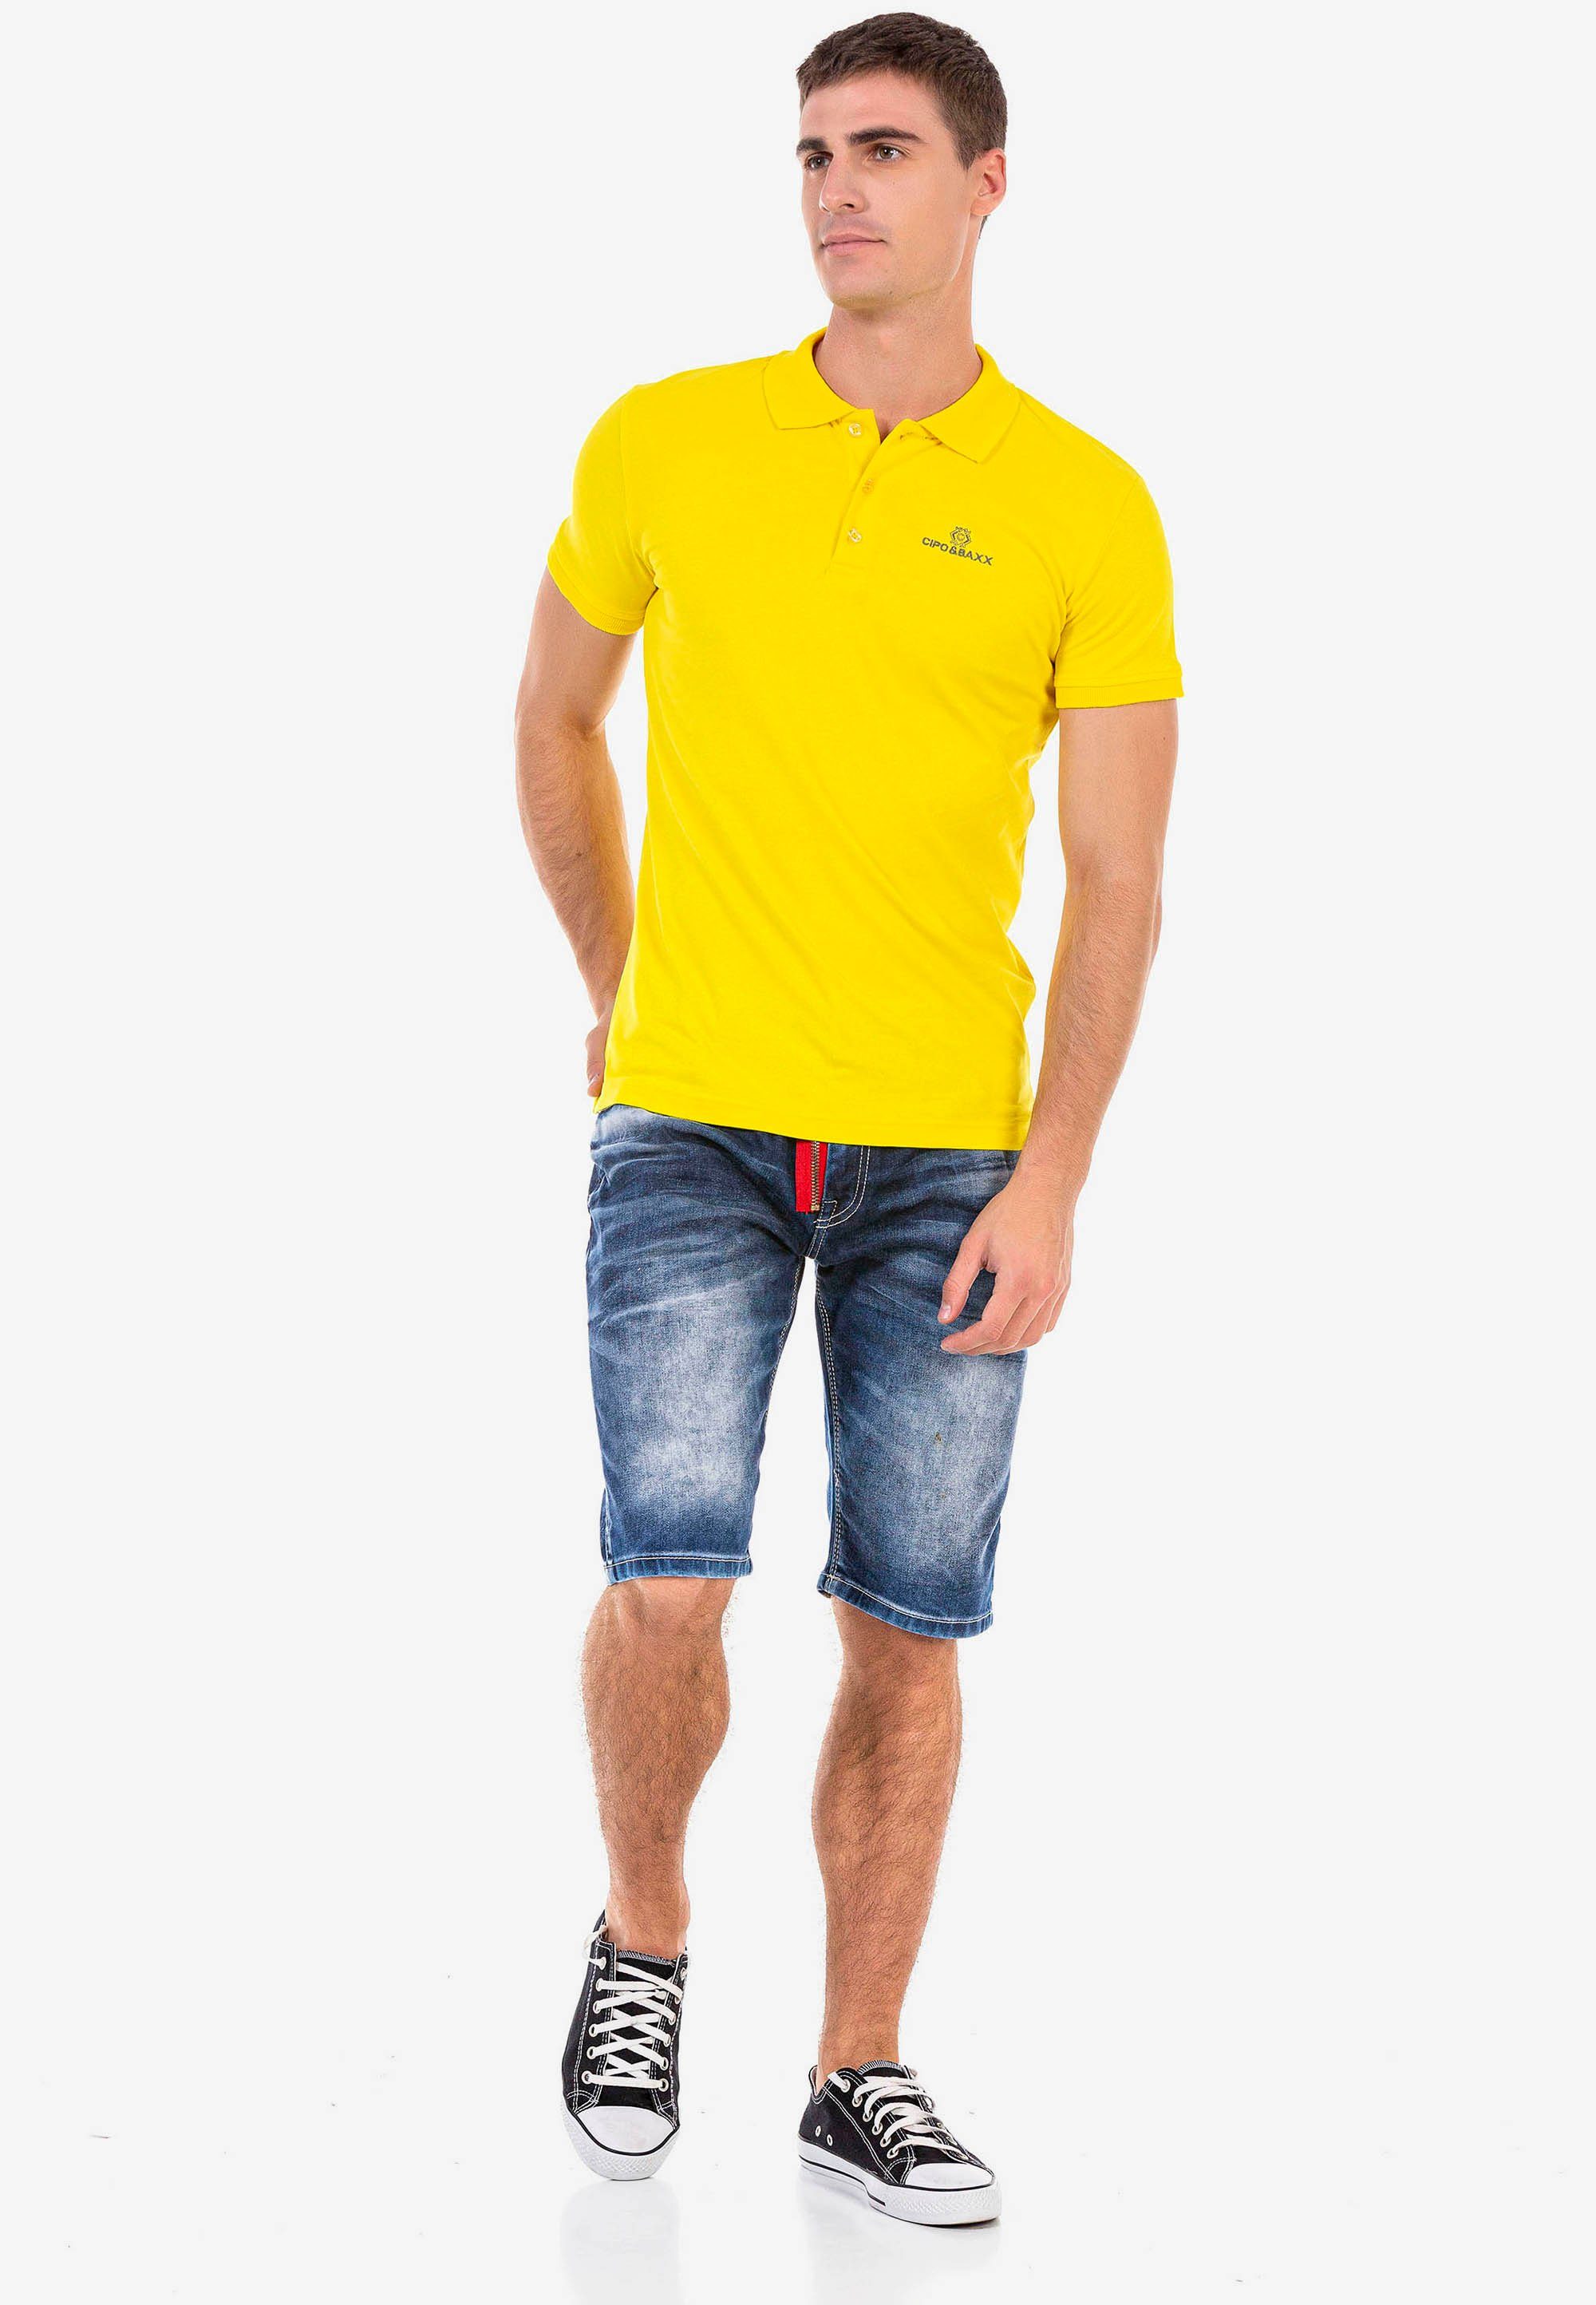 kleiner Markenstickerei Cipo & gelb mit Baxx Poloshirt